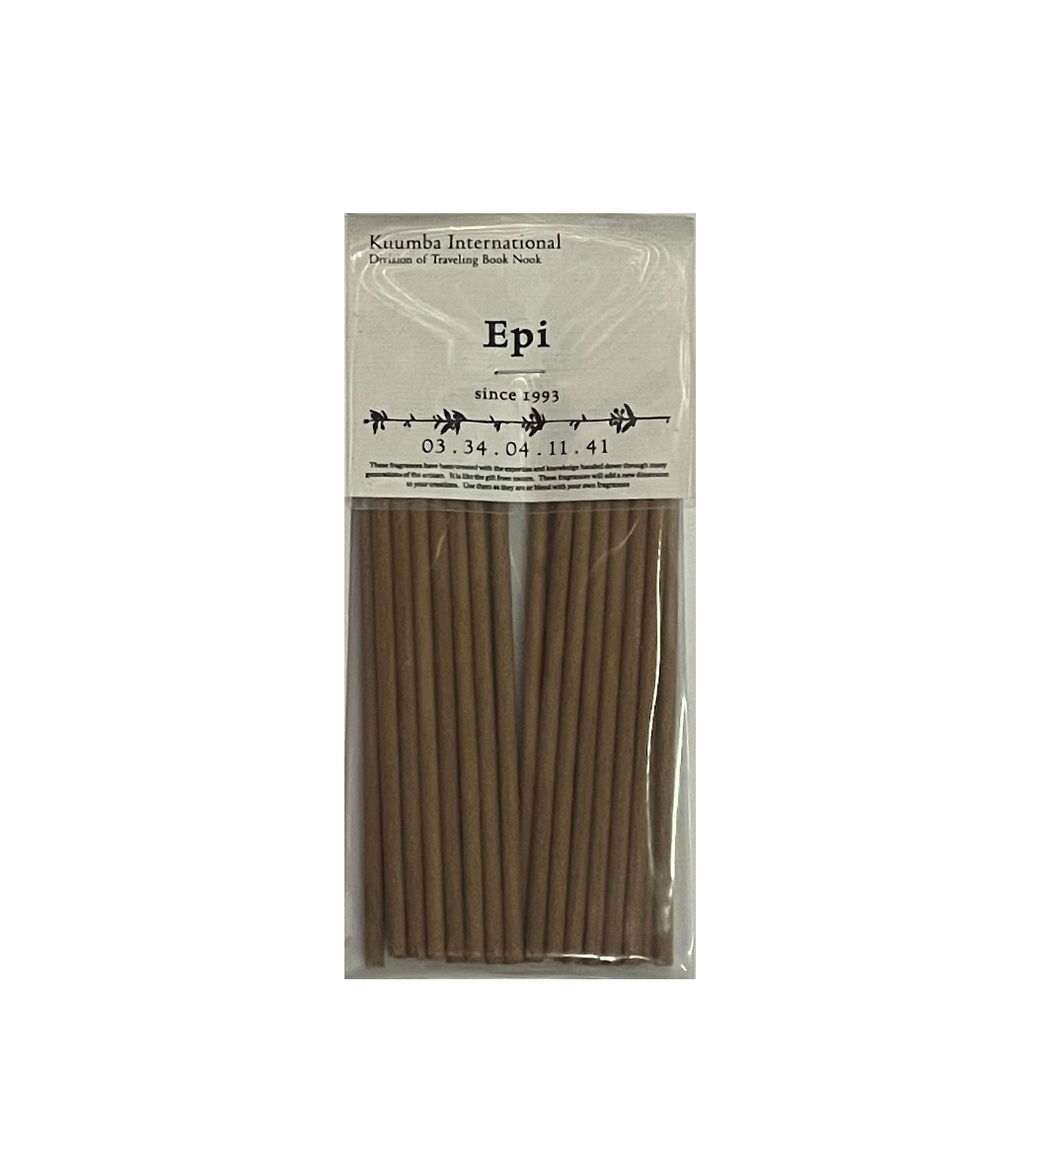 Kuumba International - Epi Mini Incense